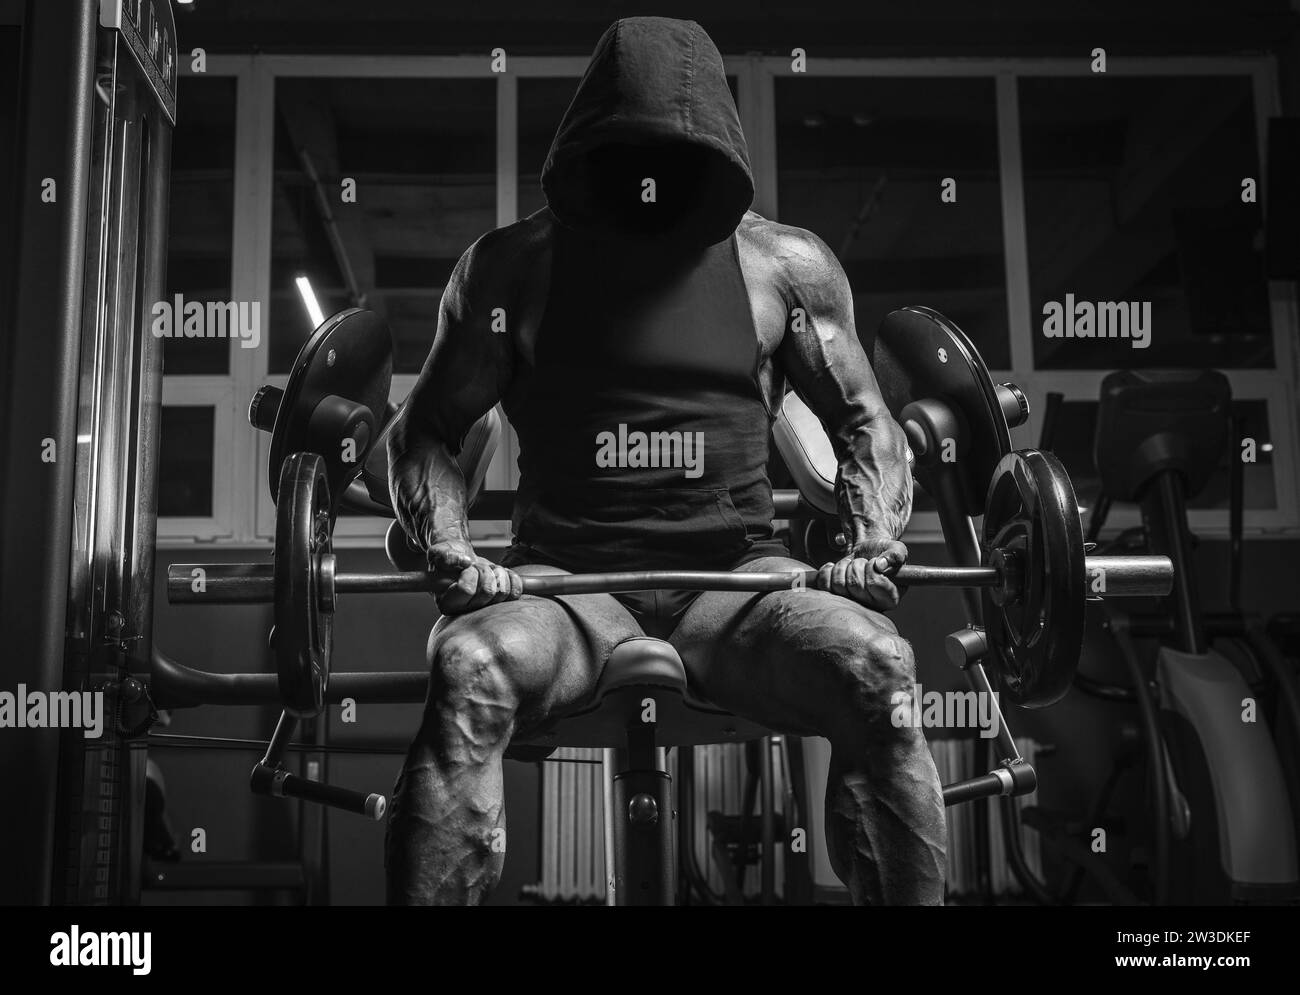 Immagine in bianco e nero di un potente atleta con una felpa con cappuccio seduta su una panchina in palestra. Concetto di fitness e bodybuilding Foto Stock